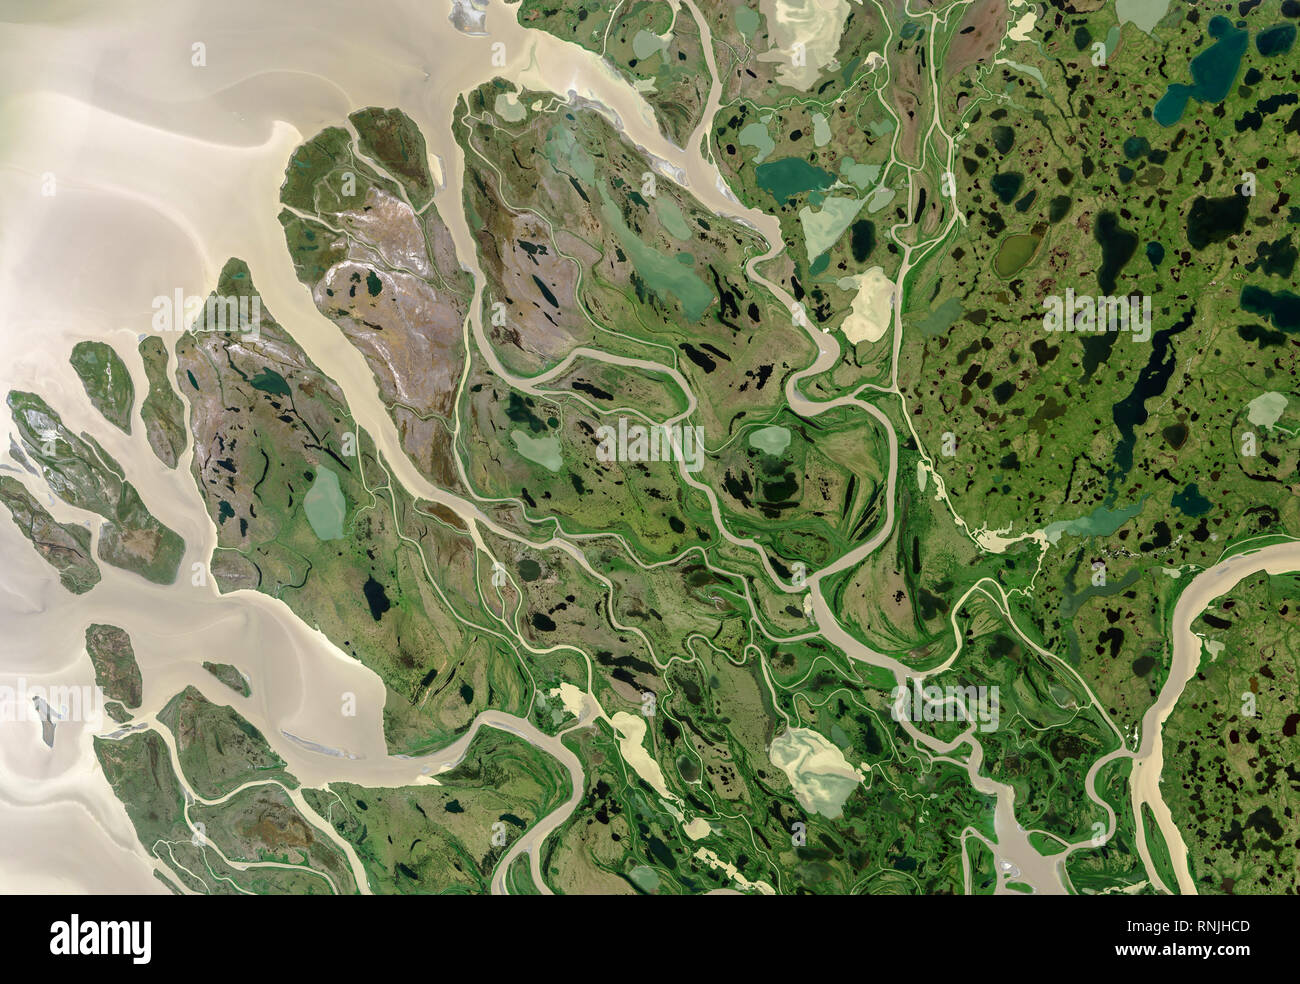 Satellite view of Mackenzie river tributaries Canada Stock Photo